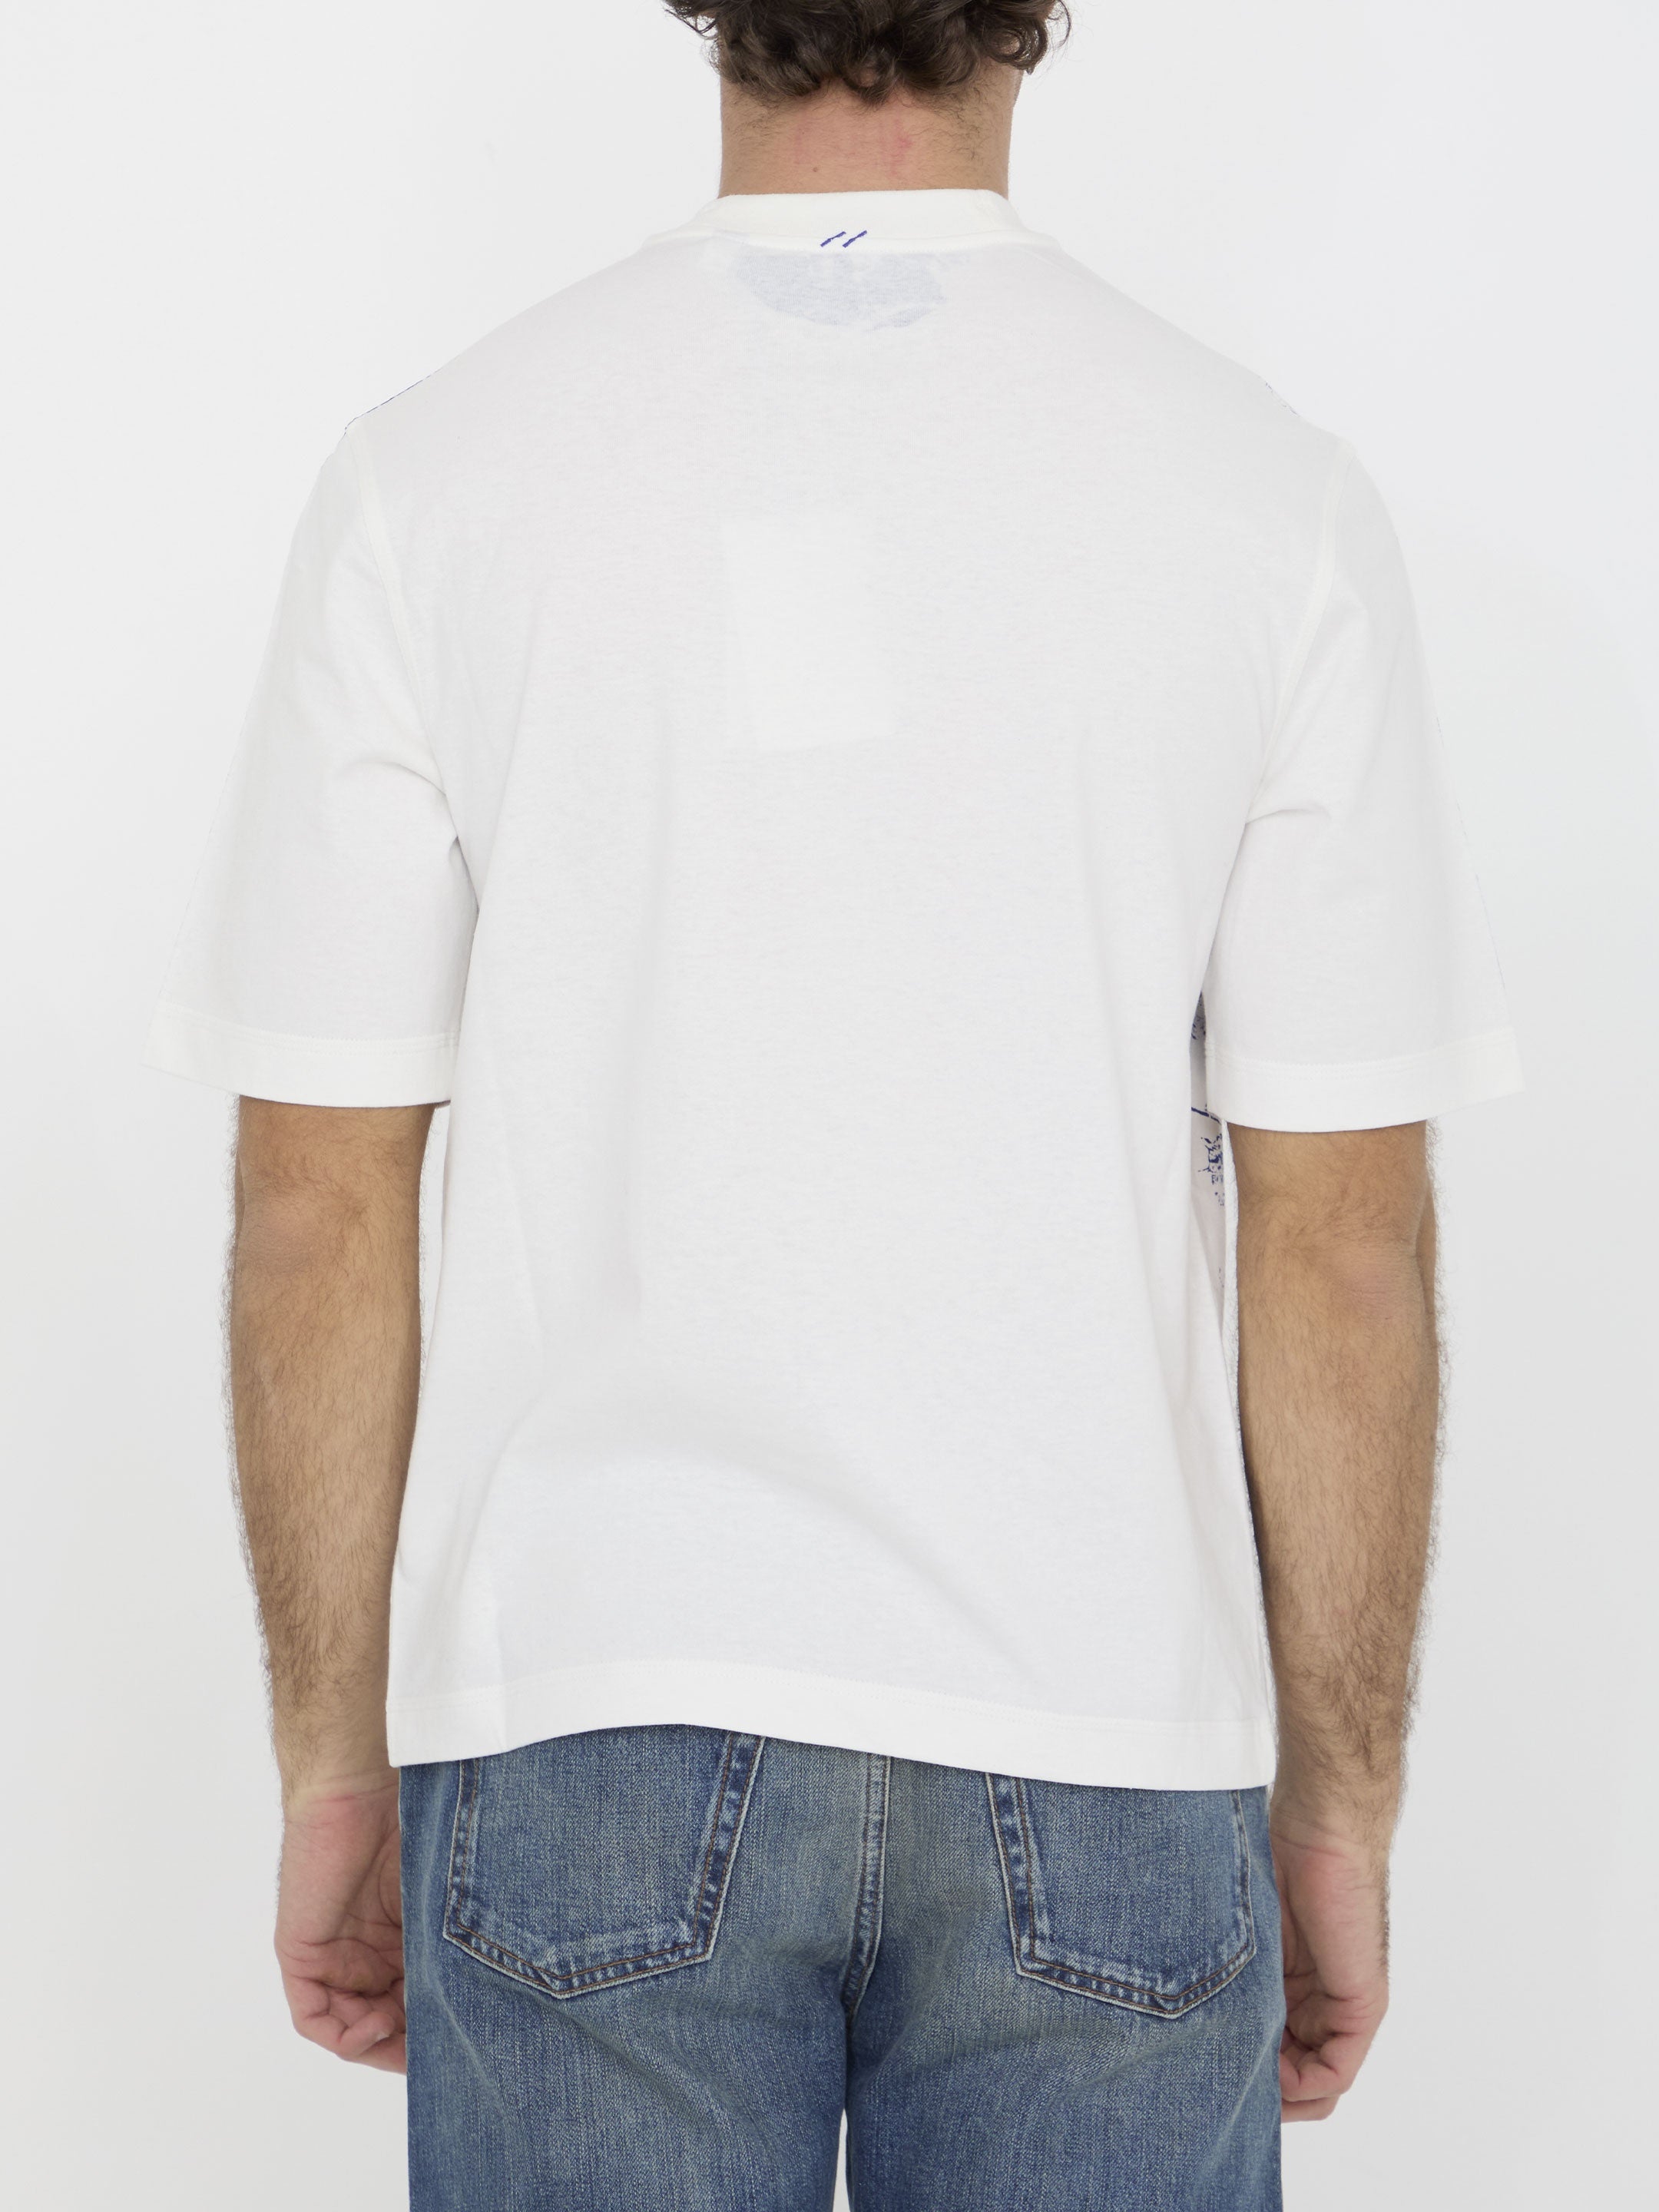 EKD cotton t-shirt